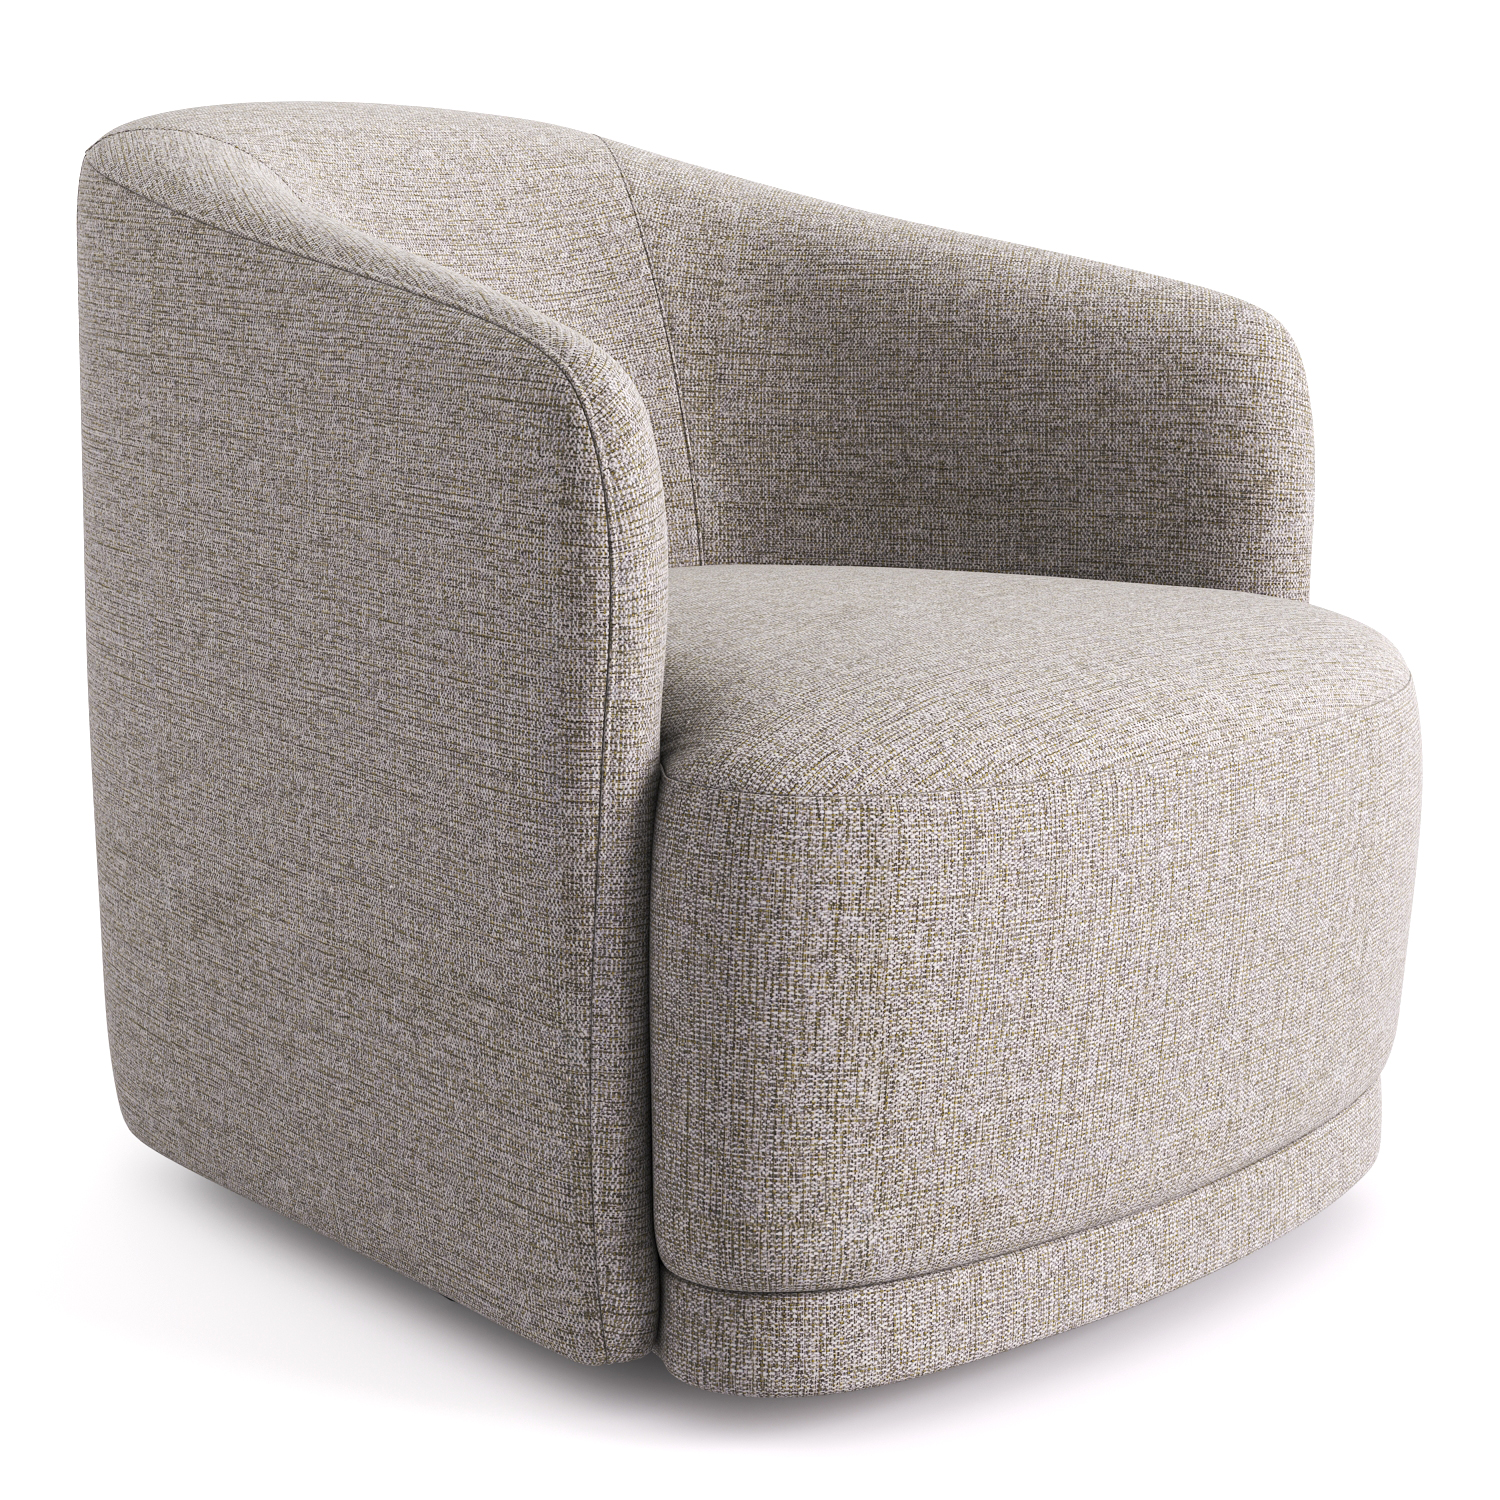 Мягкое вращающееся кресло KUDO: стильный интерьерный акцент для гостиной: фото NaN